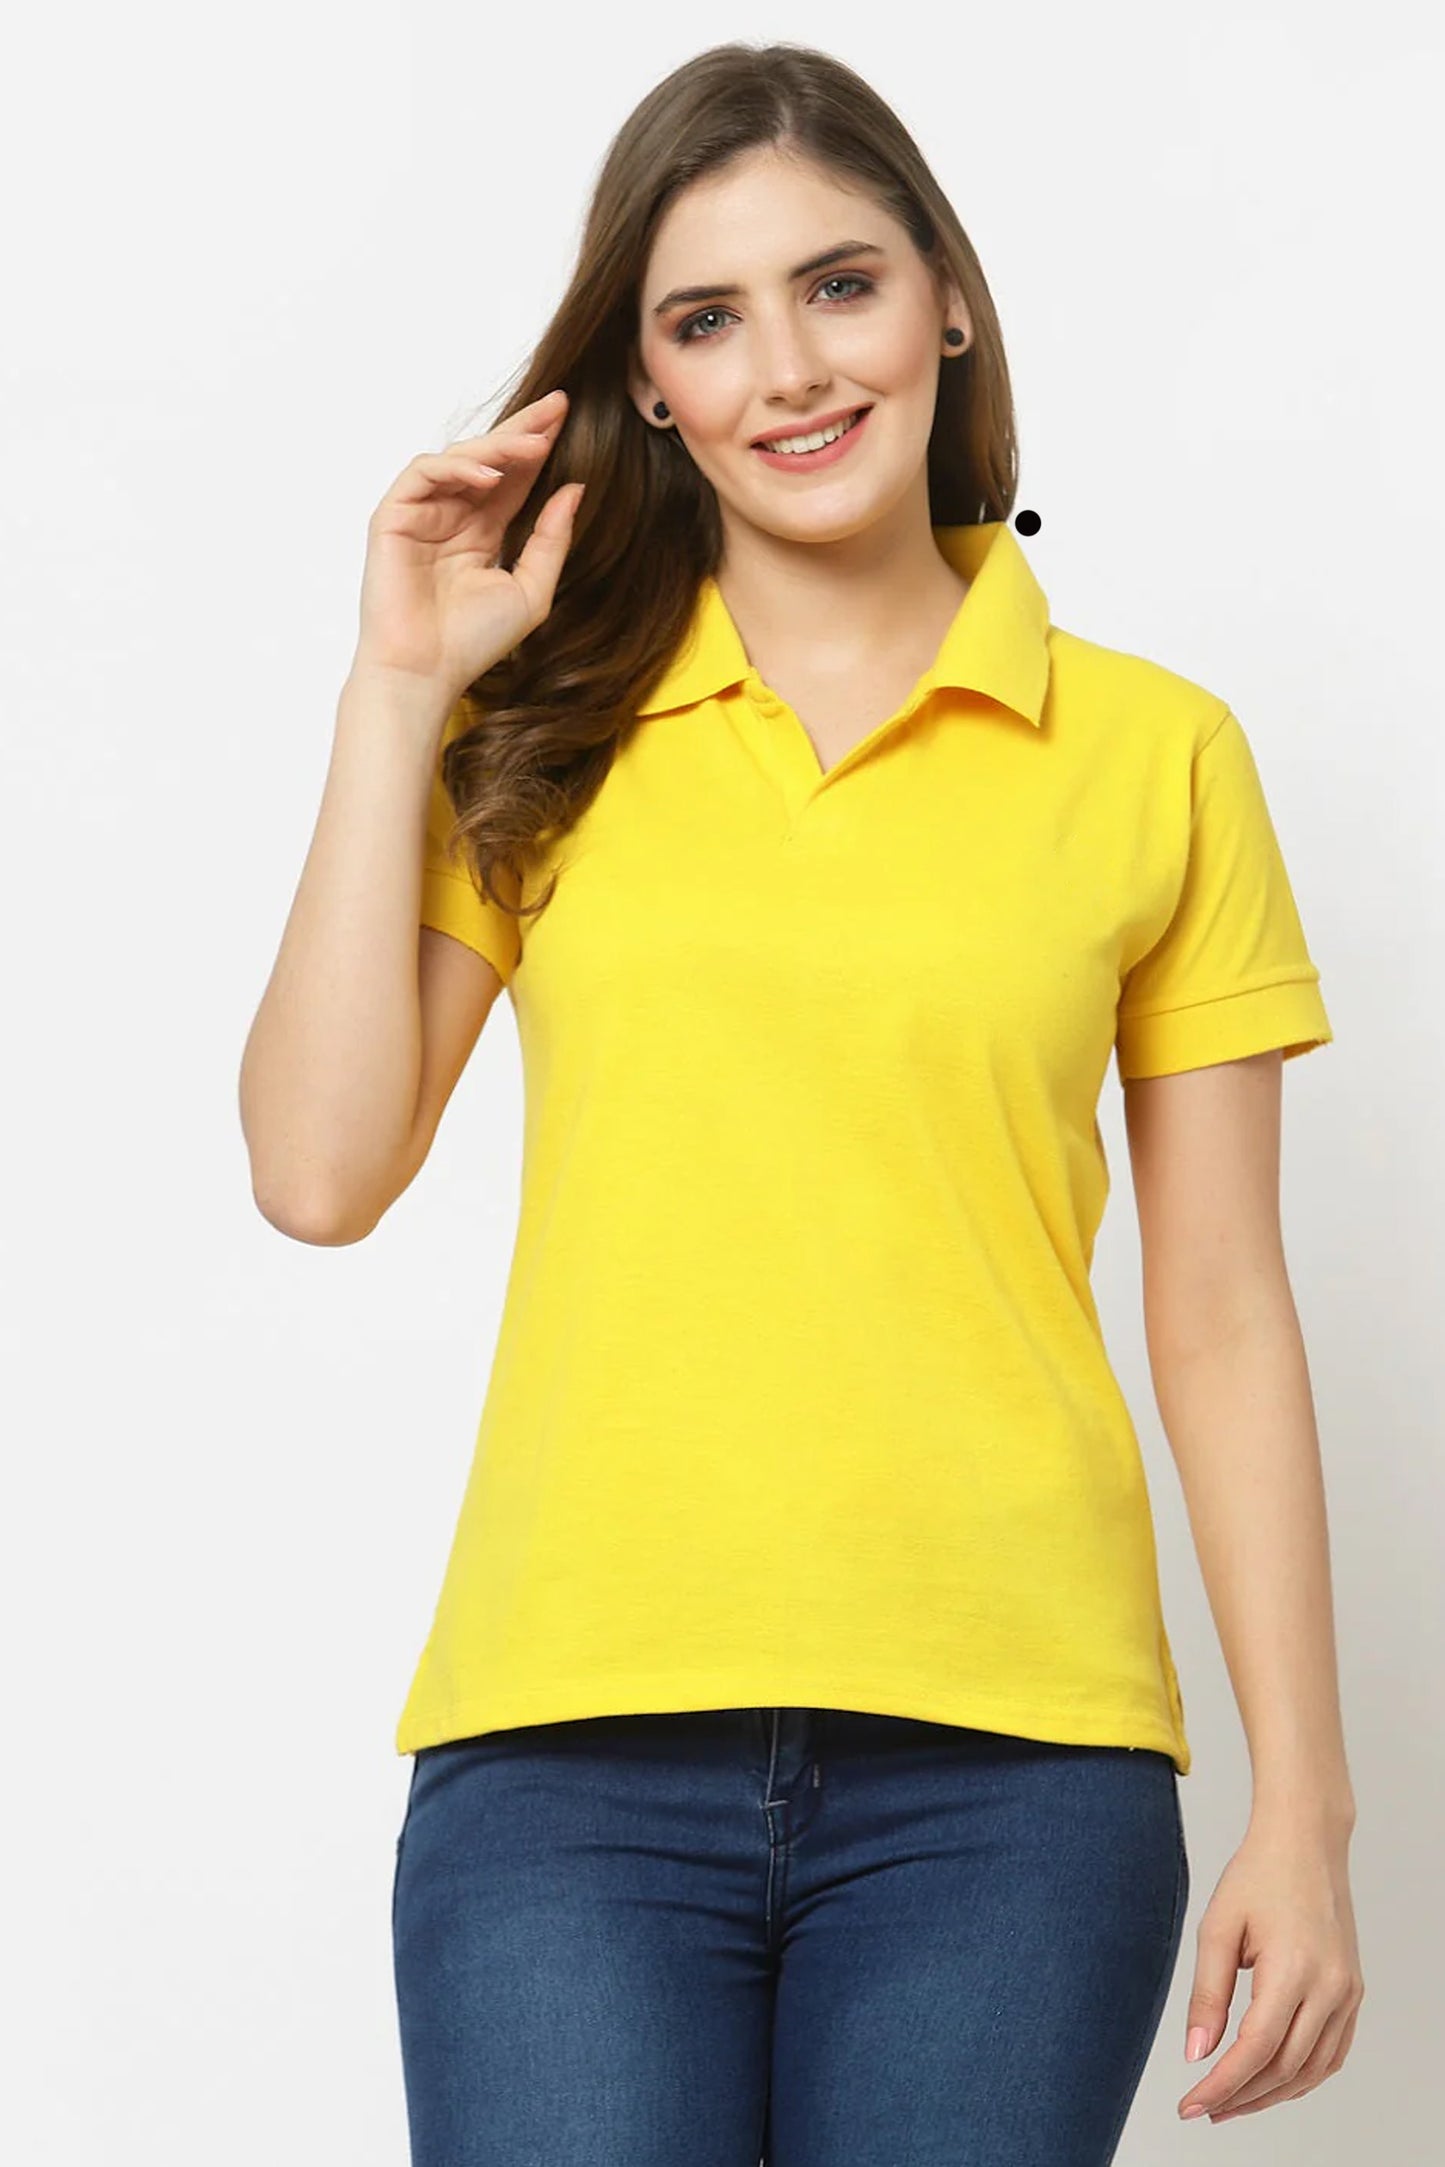 Women's Yellow Polo Shirt